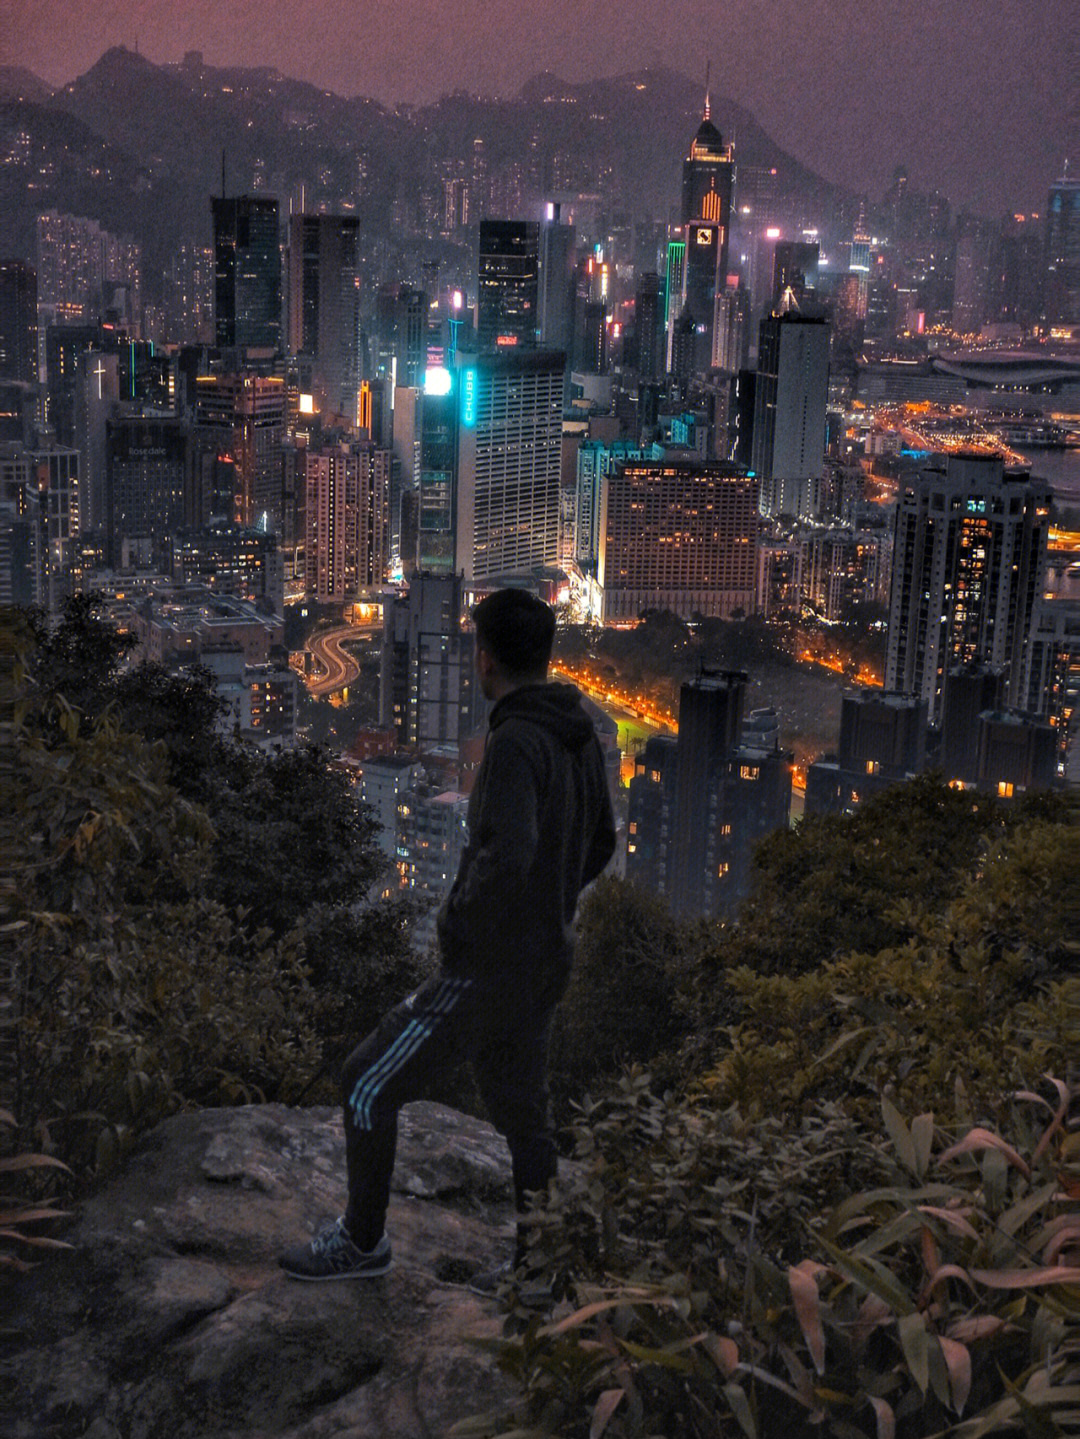 香港奇案之宝马山图片